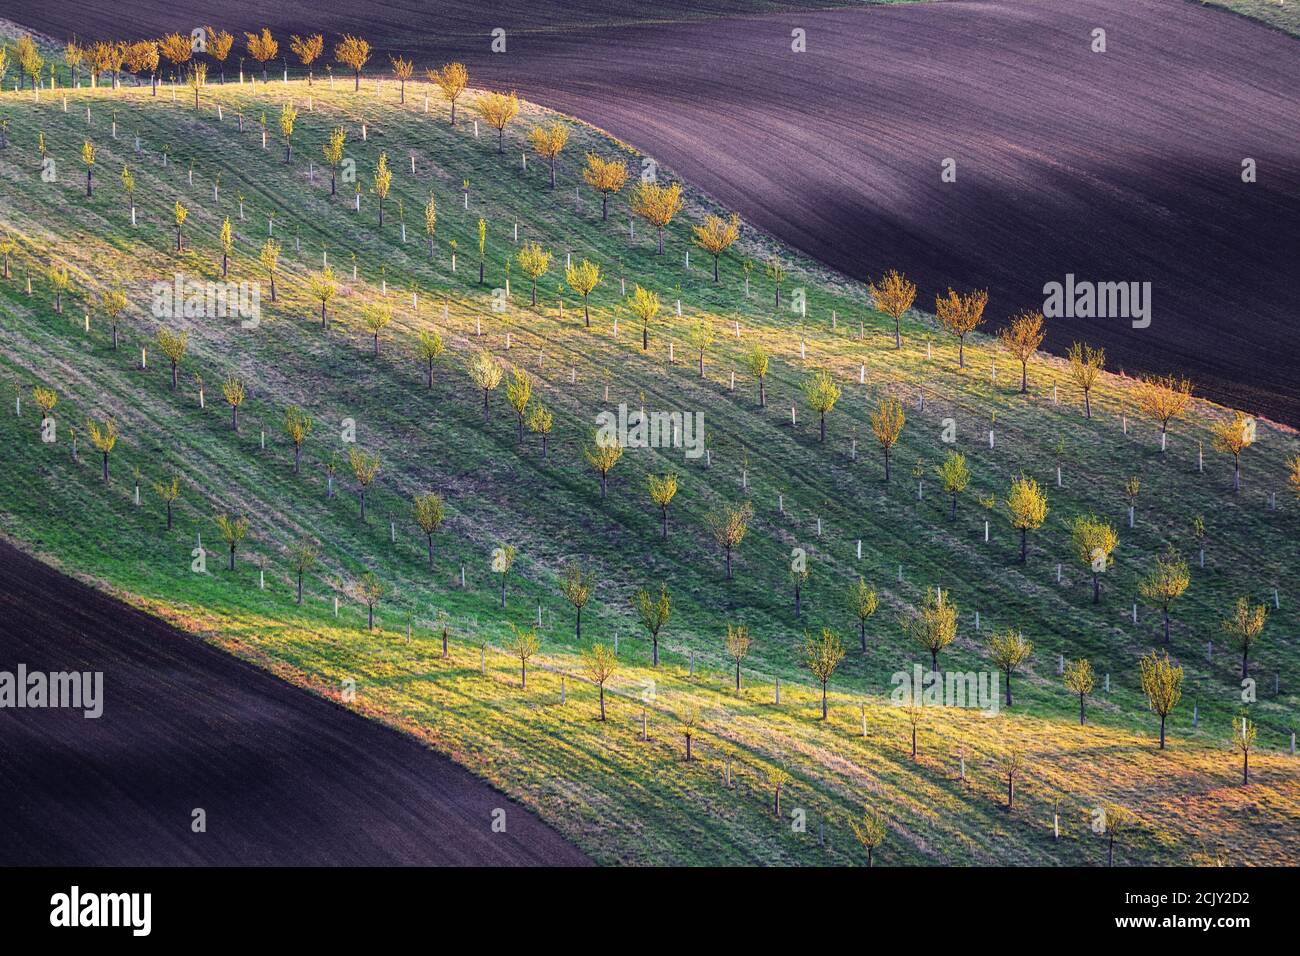 Waley è interessante illuminato dai raggi, gioco di luce e ombre sul campo con l'erba verde agricoltura. Regione della Moravia meridionale Repubblica Ceca. Foto Stock